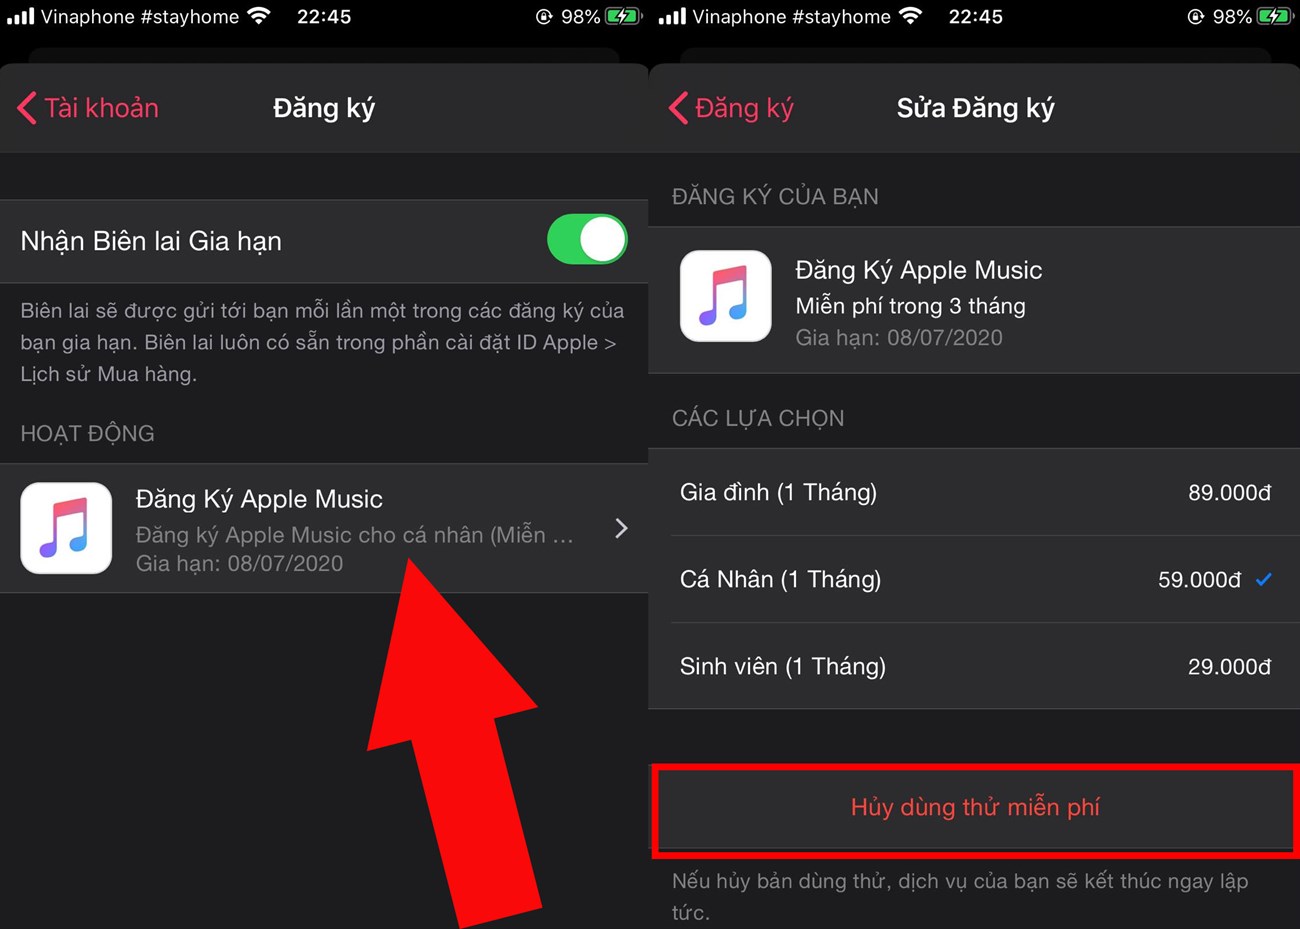 Hướng dẫn cách đăng ký Apple Music miễn phí trong 3 tháng cực dễ > Huỷ dùng thử miễn phí